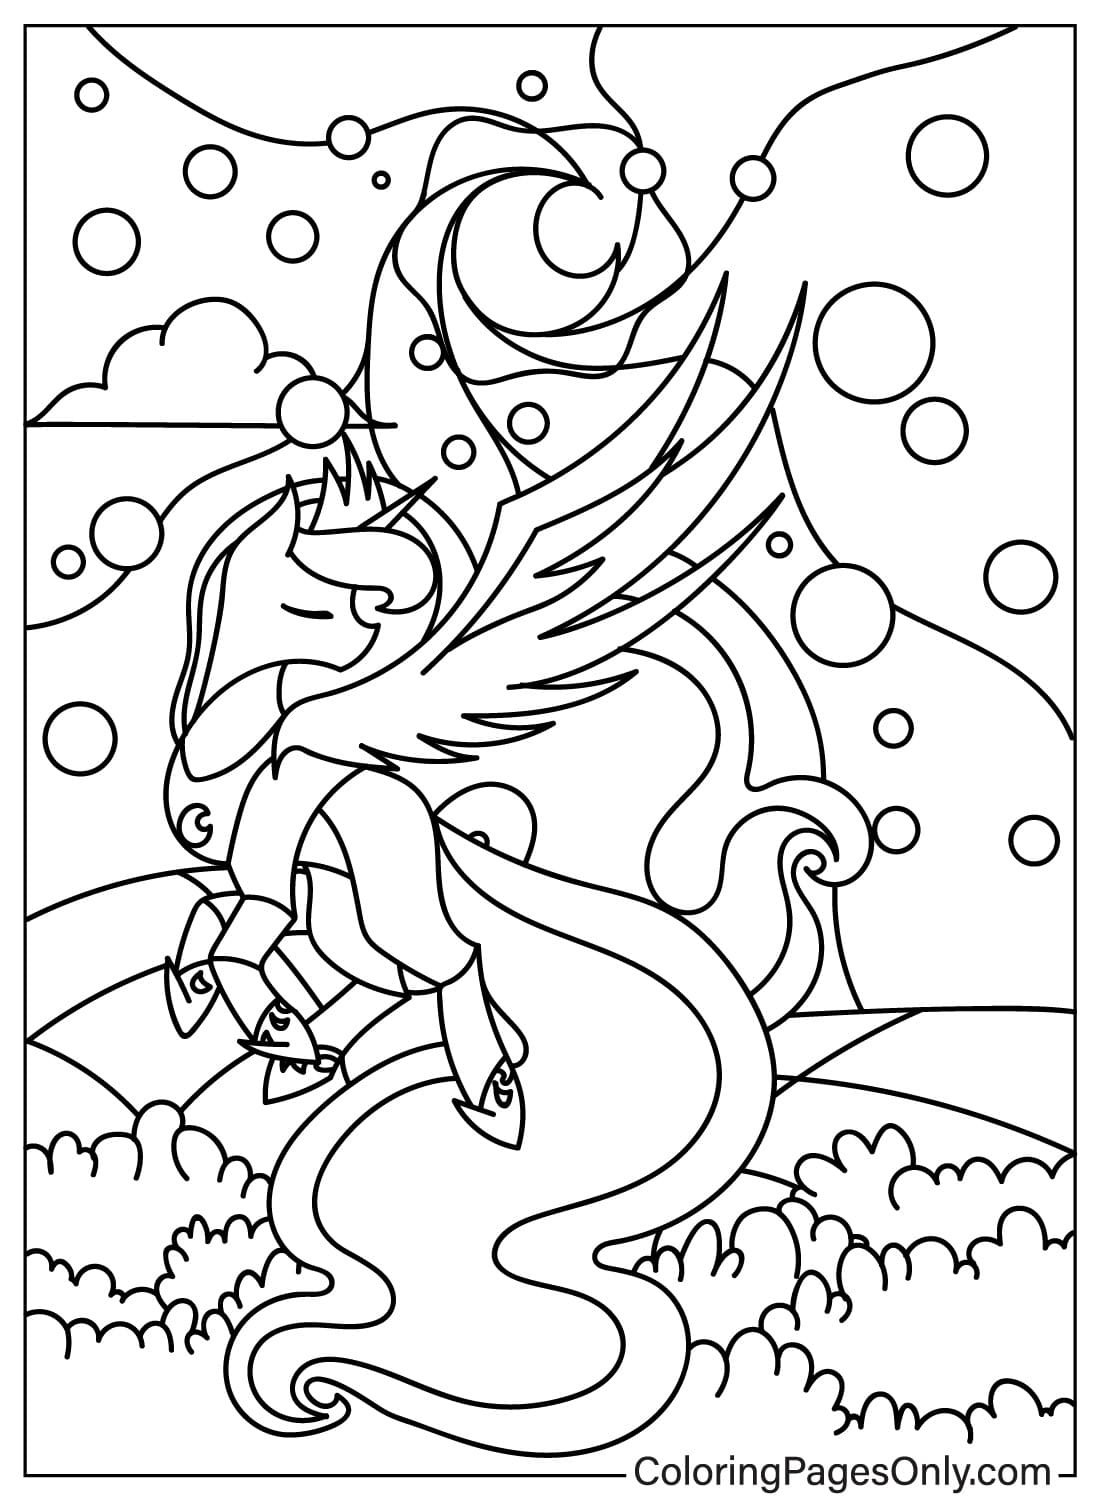 Dibujo para colorear de la Princesa Luna para imprimir de la Princesa Luna